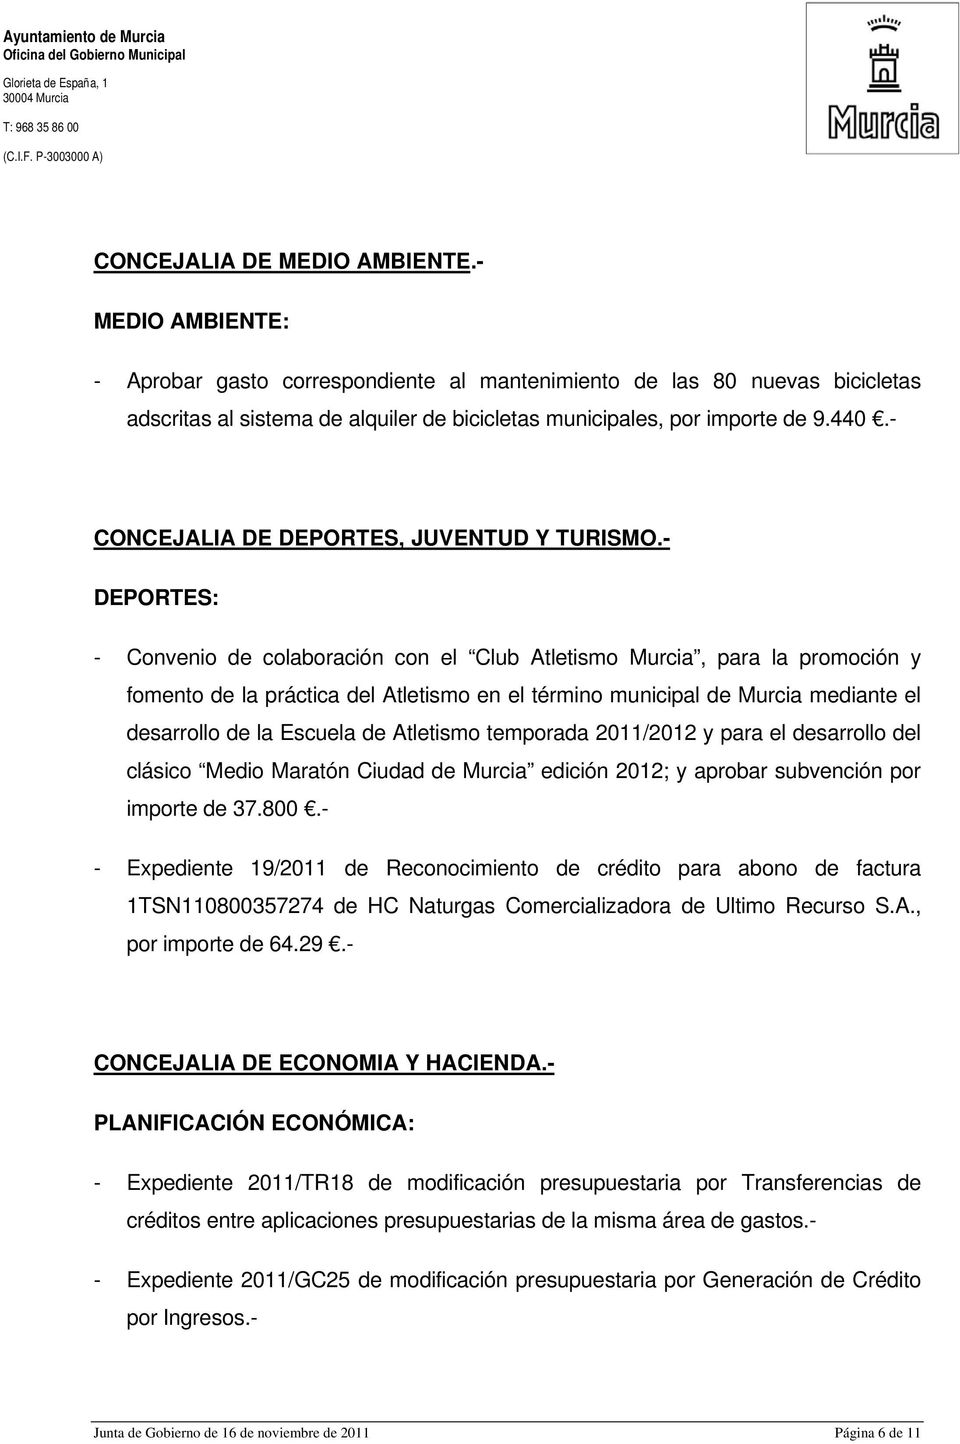 - CONCEJALIA DE DEPORTES, JUVENTUD Y TURISMO.